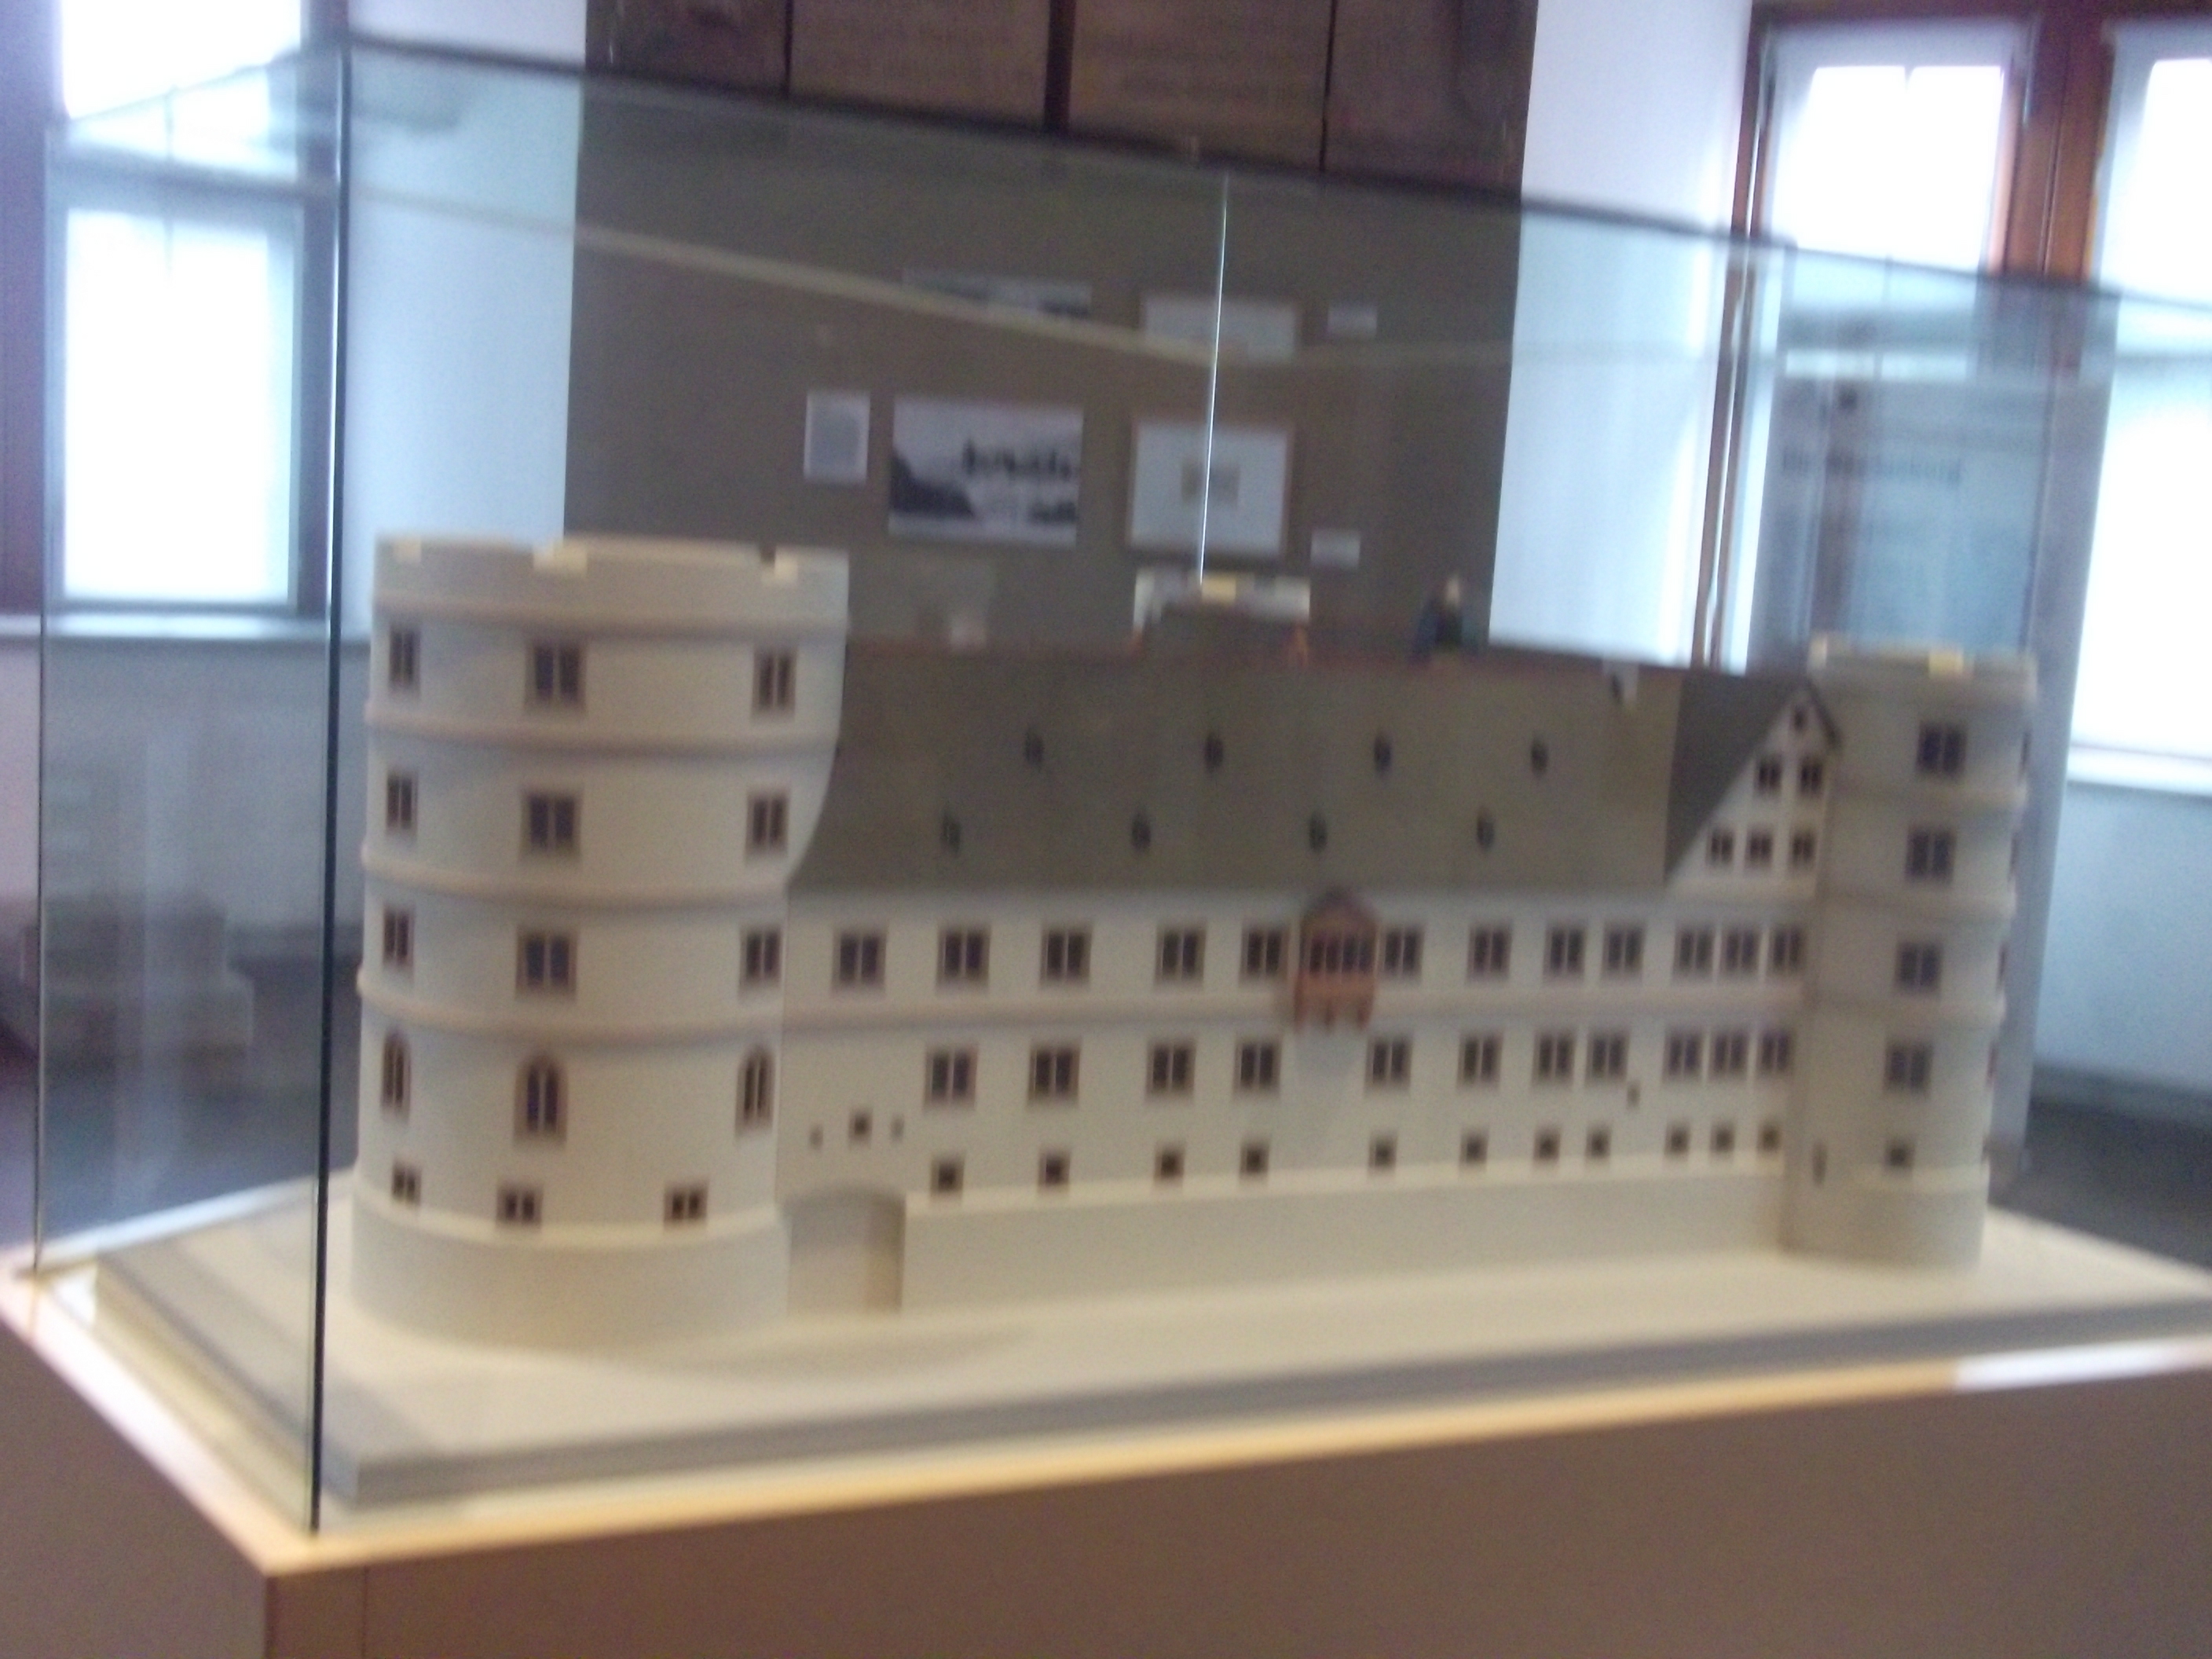 Modell der Wewelsburg in der Ausstellung